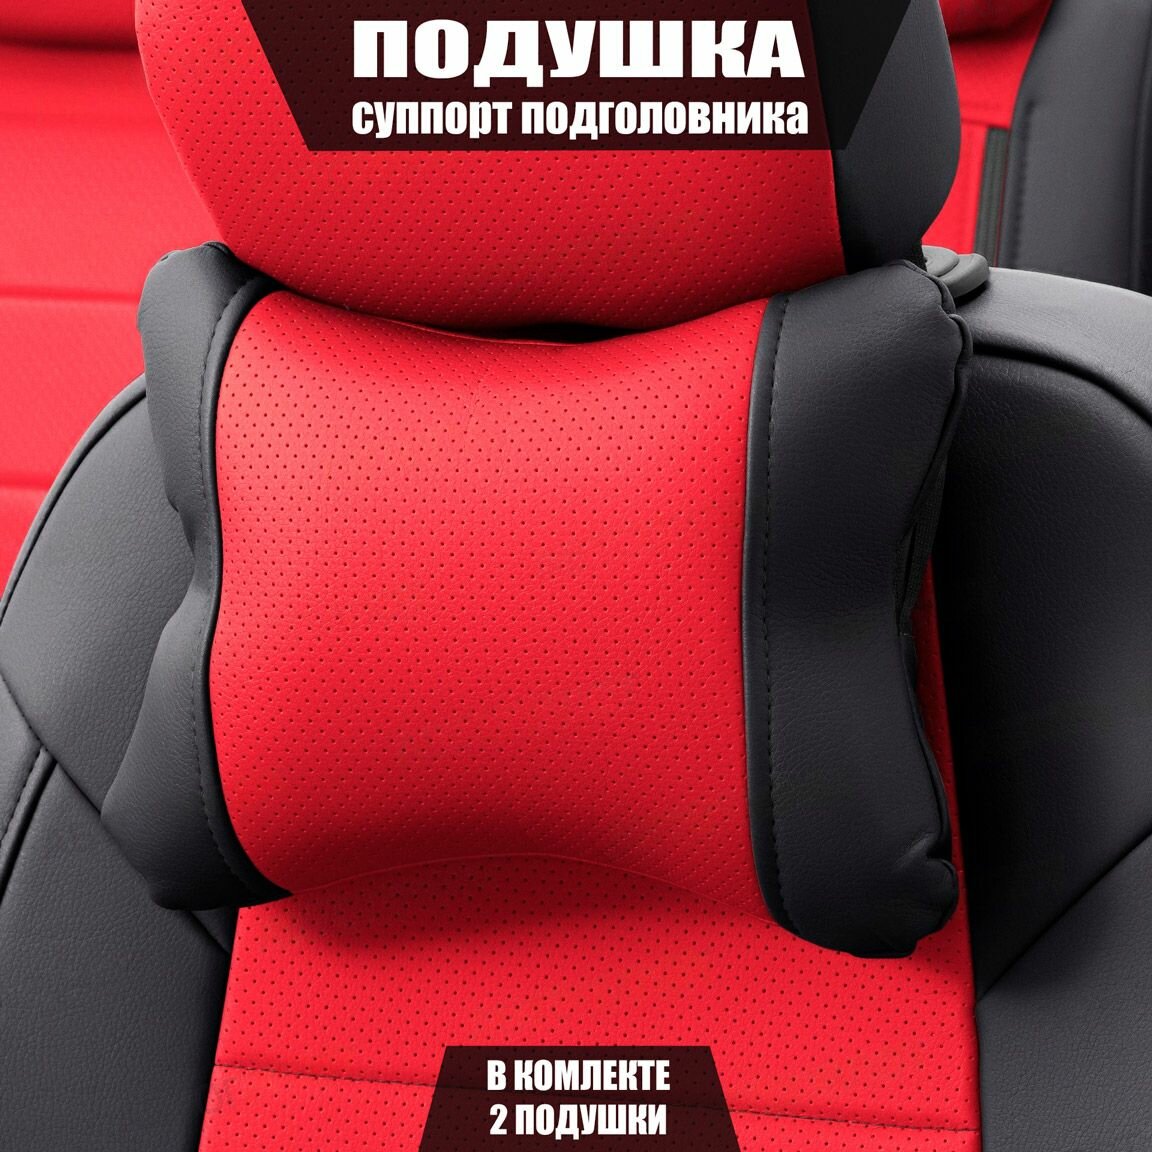 Подушки под шею (суппорт подголовника) для Сузуки Витара (2014 - 2019) внедорожник 5 дверей / Suzuki Vitara, Экокожа, 2 подушки, Черный и красный